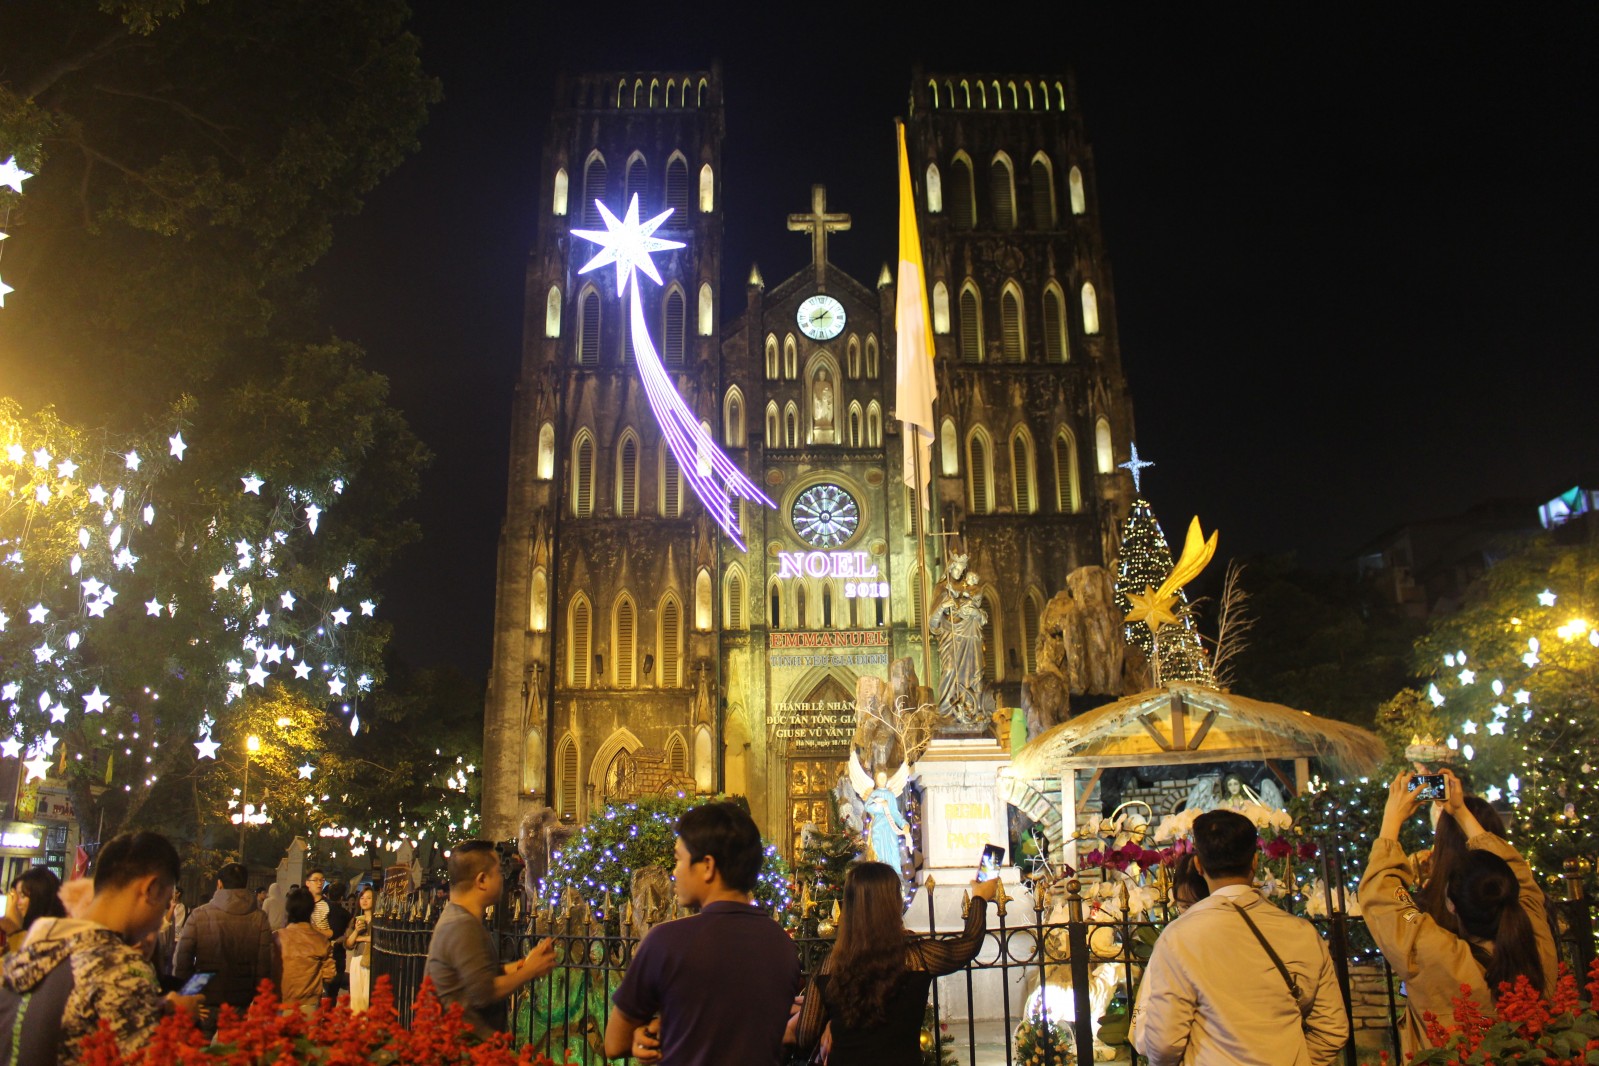 Nhà thờ lớn - một trong những nhà thờ cổ kính nhất ở Thủ Đô (40 phố Nhà Chung, Hoàn Kiếm, Hà Nội ) vốn là địa điểm quen thuộc để đón lễ giáng sinh